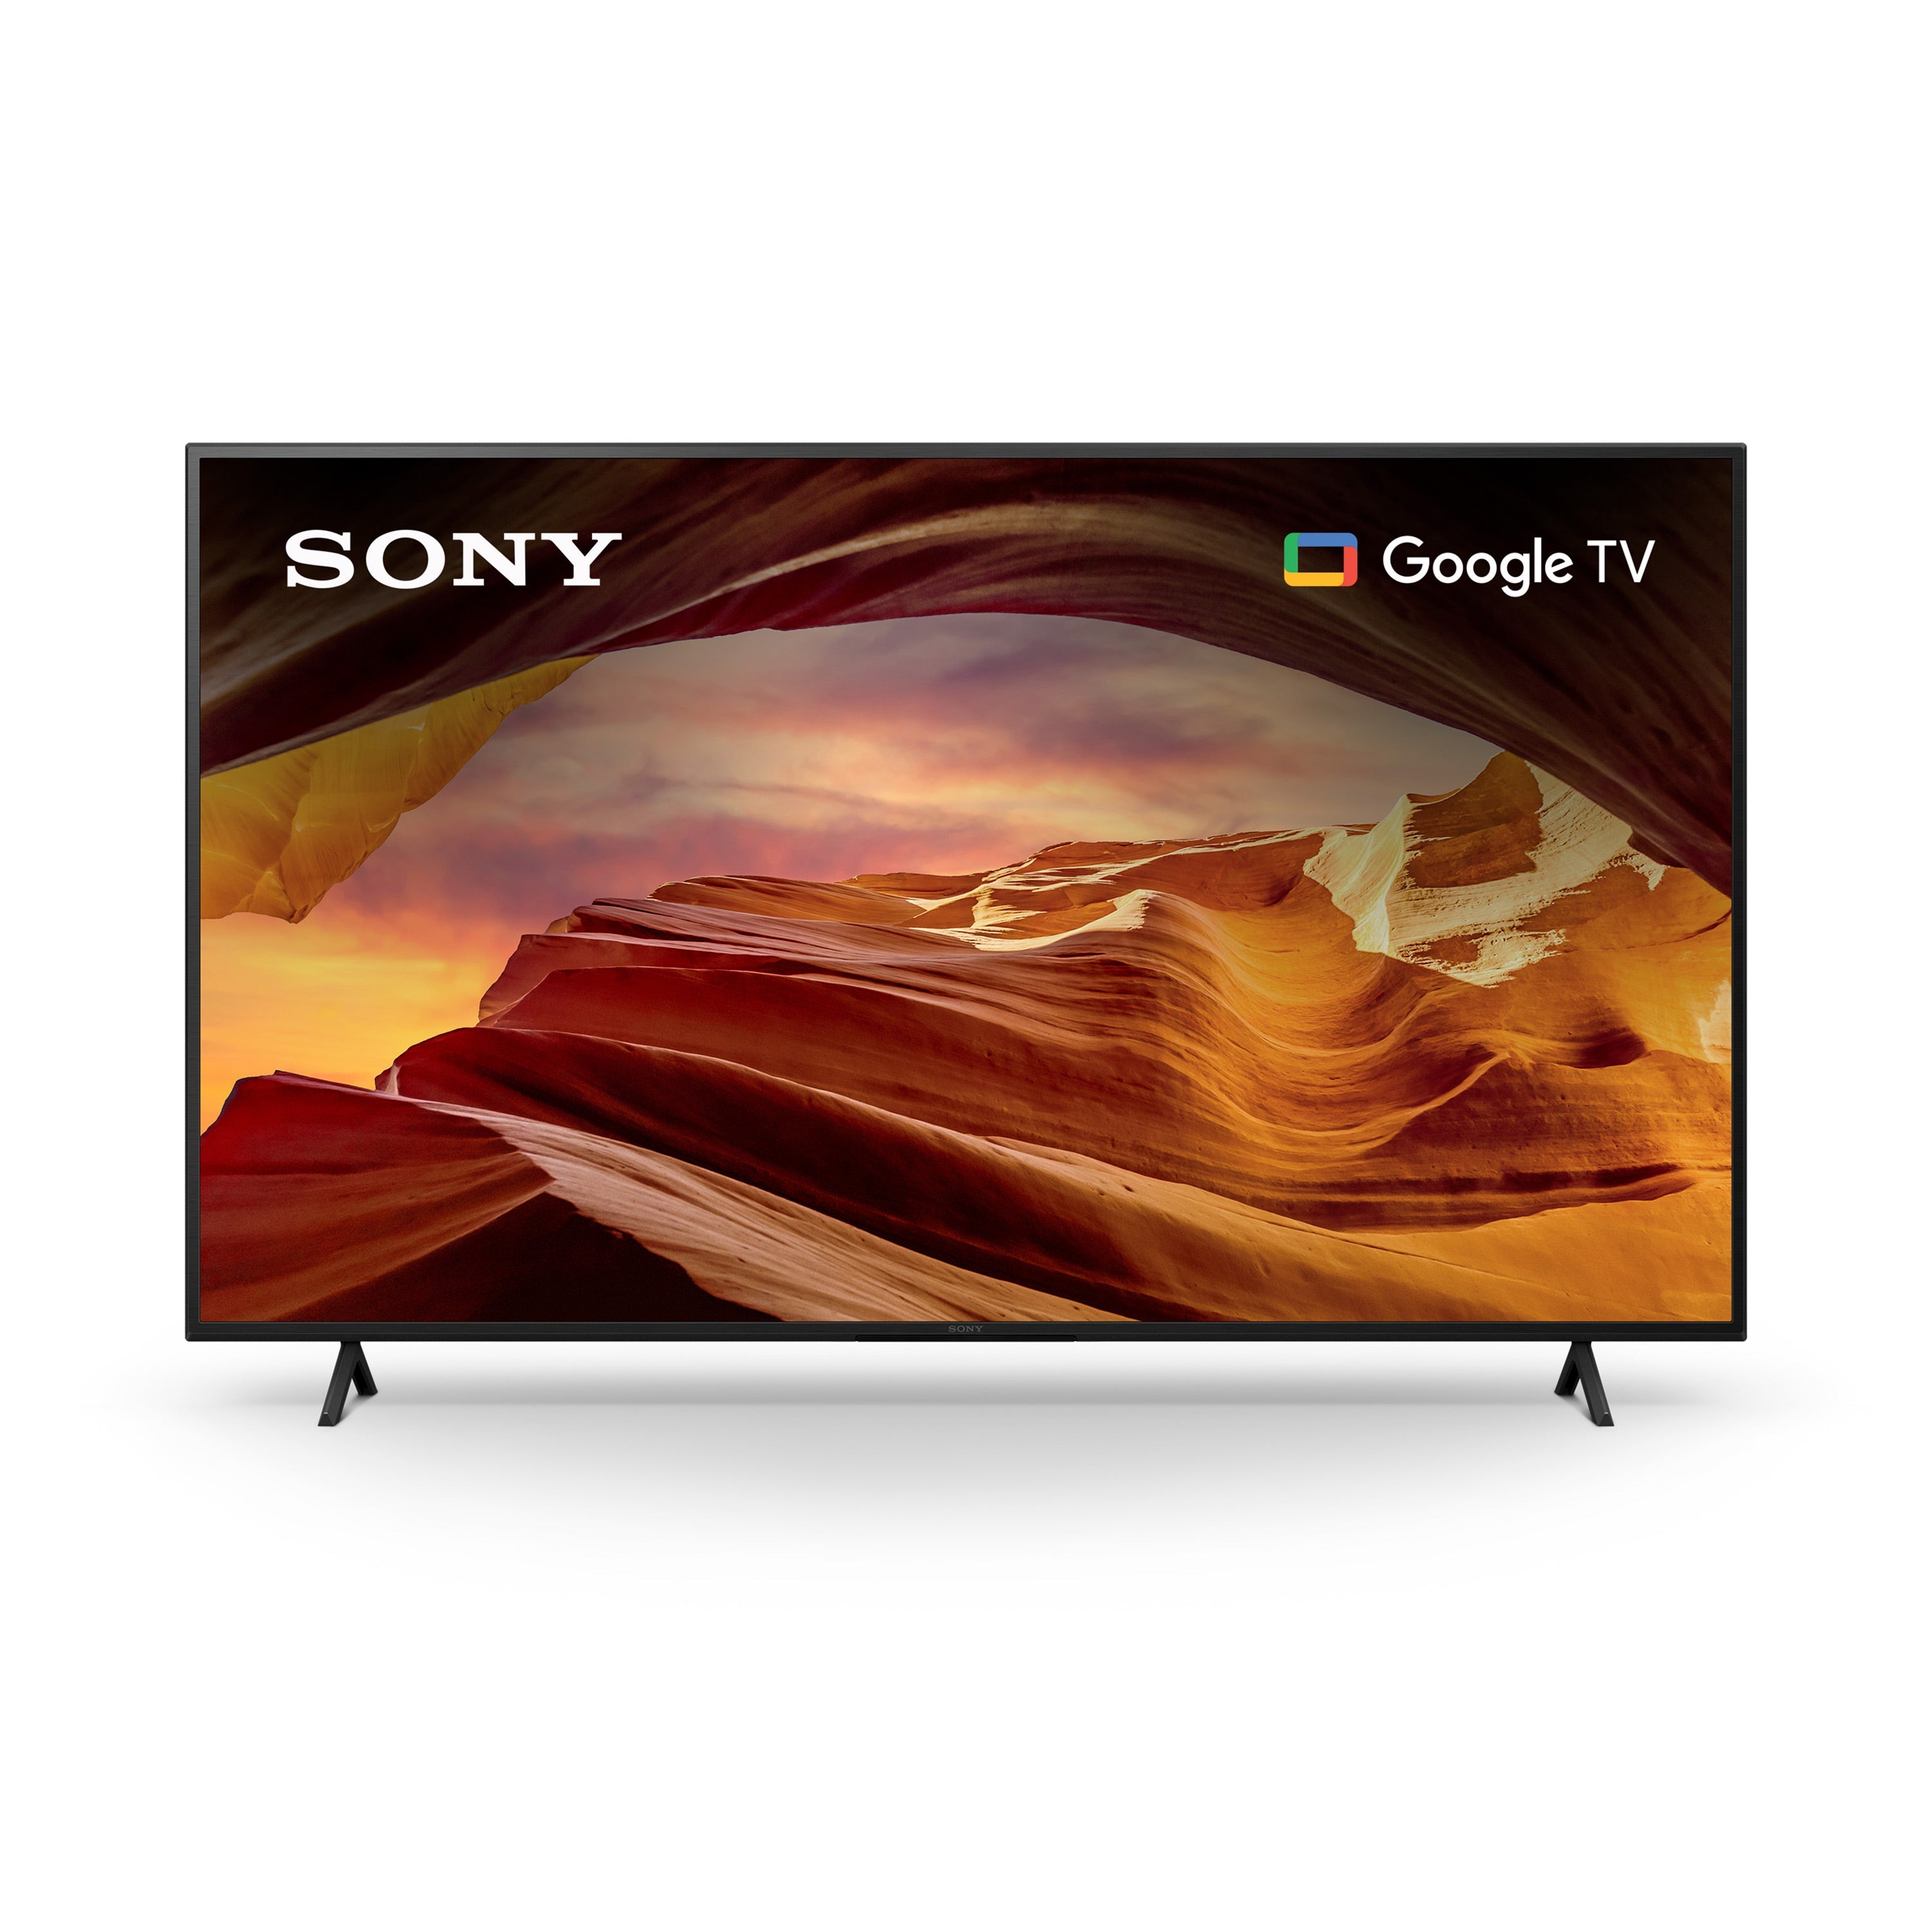 Sony X77L LED | 4K HDR TV | Smart TV (Google TV)